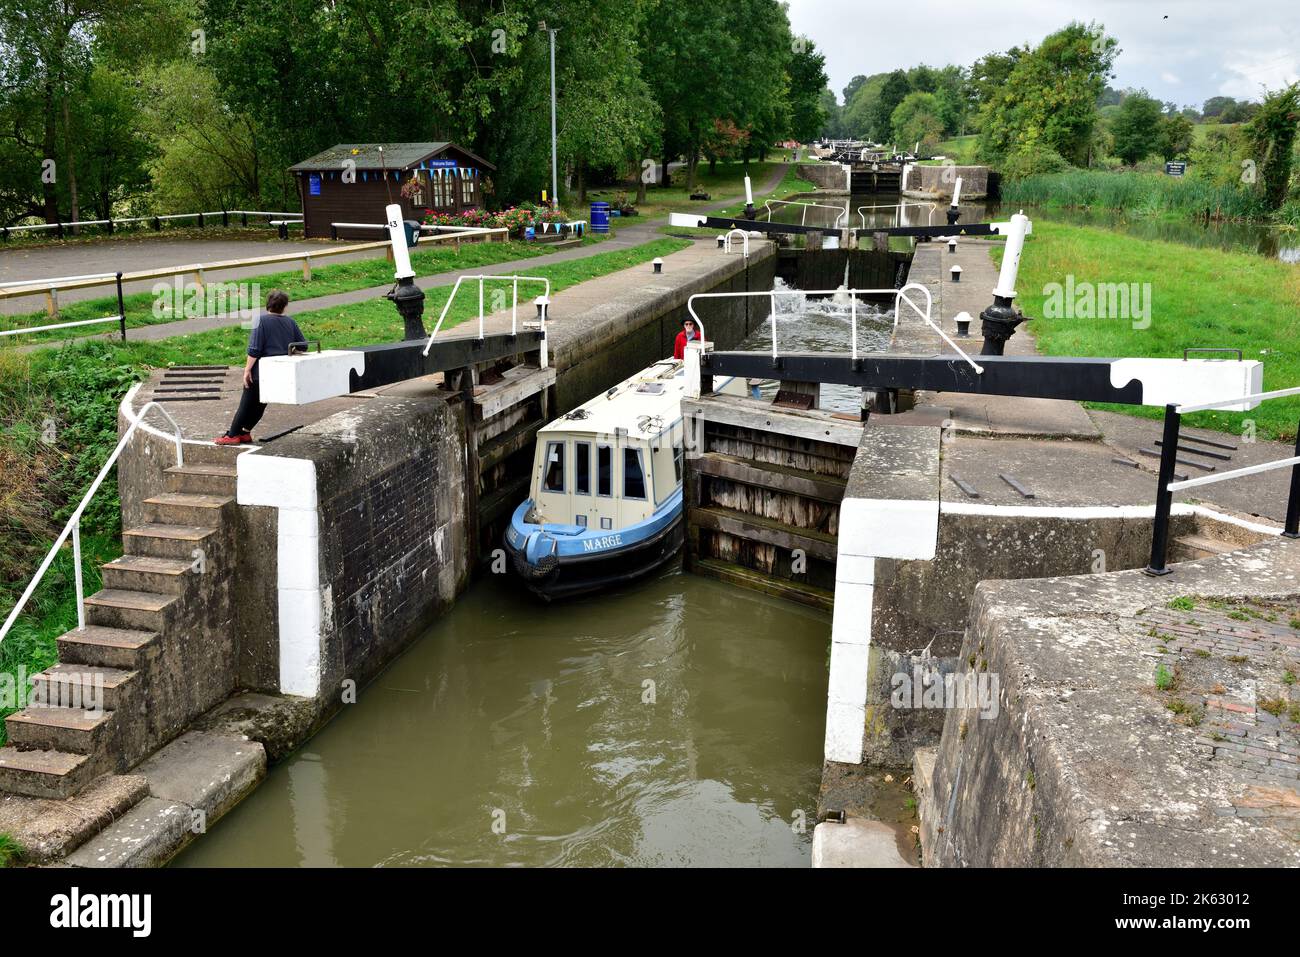 Barco estrecho del canal que pasa a través de las puertas de bloqueo en el trayecto de 21 esclusas en Hatton Locks en el Canal Grand Union, Warwick, Warwickshire Foto de stock